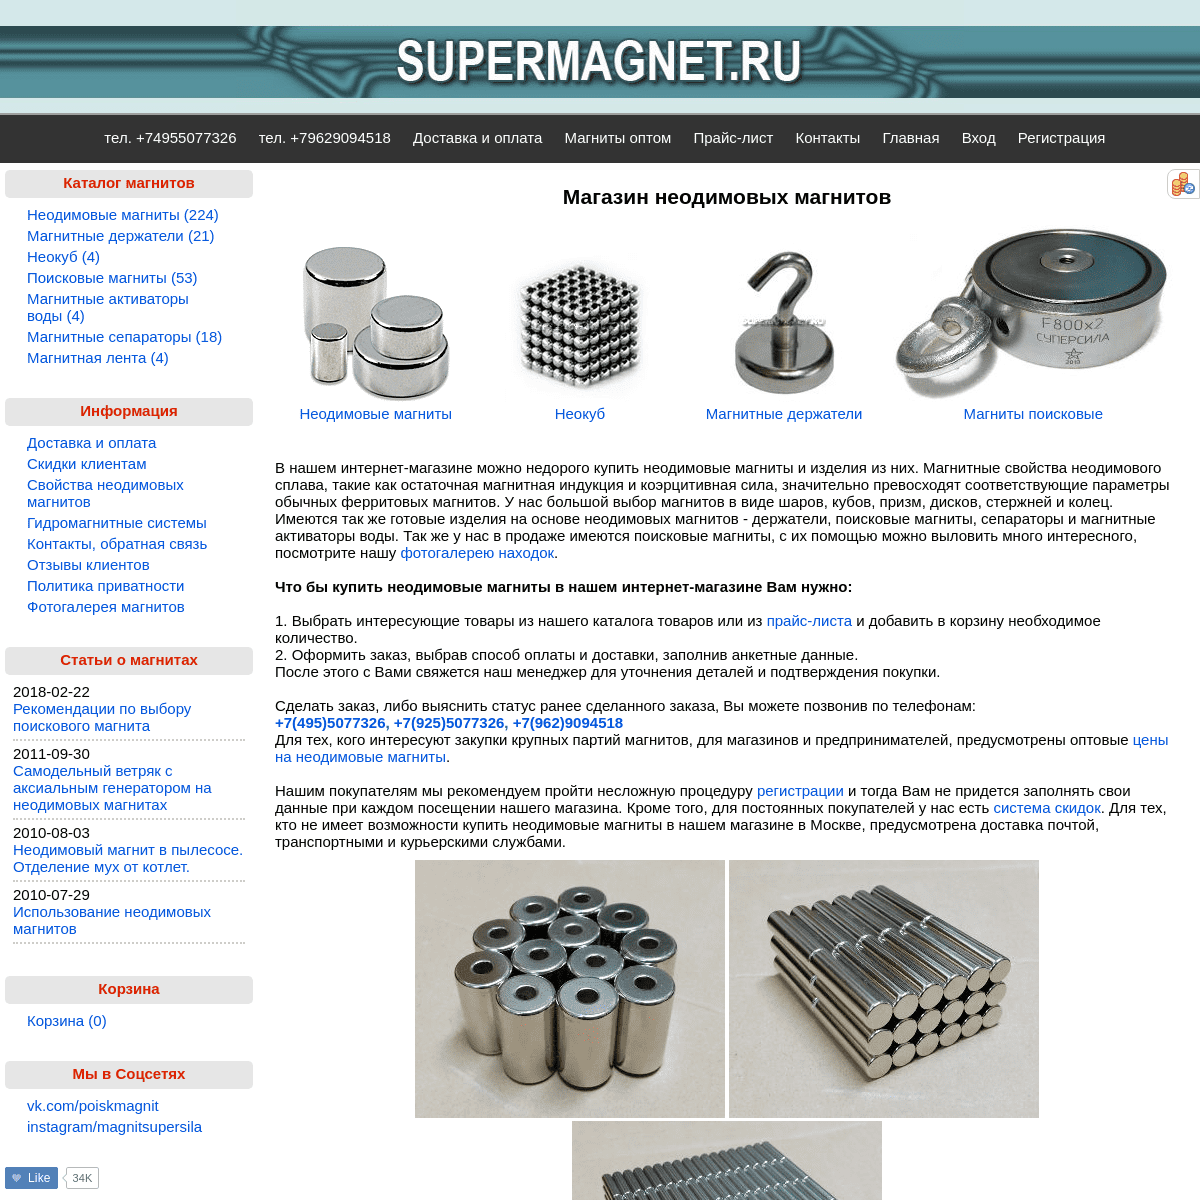 A complete backup of supermagnet.ru